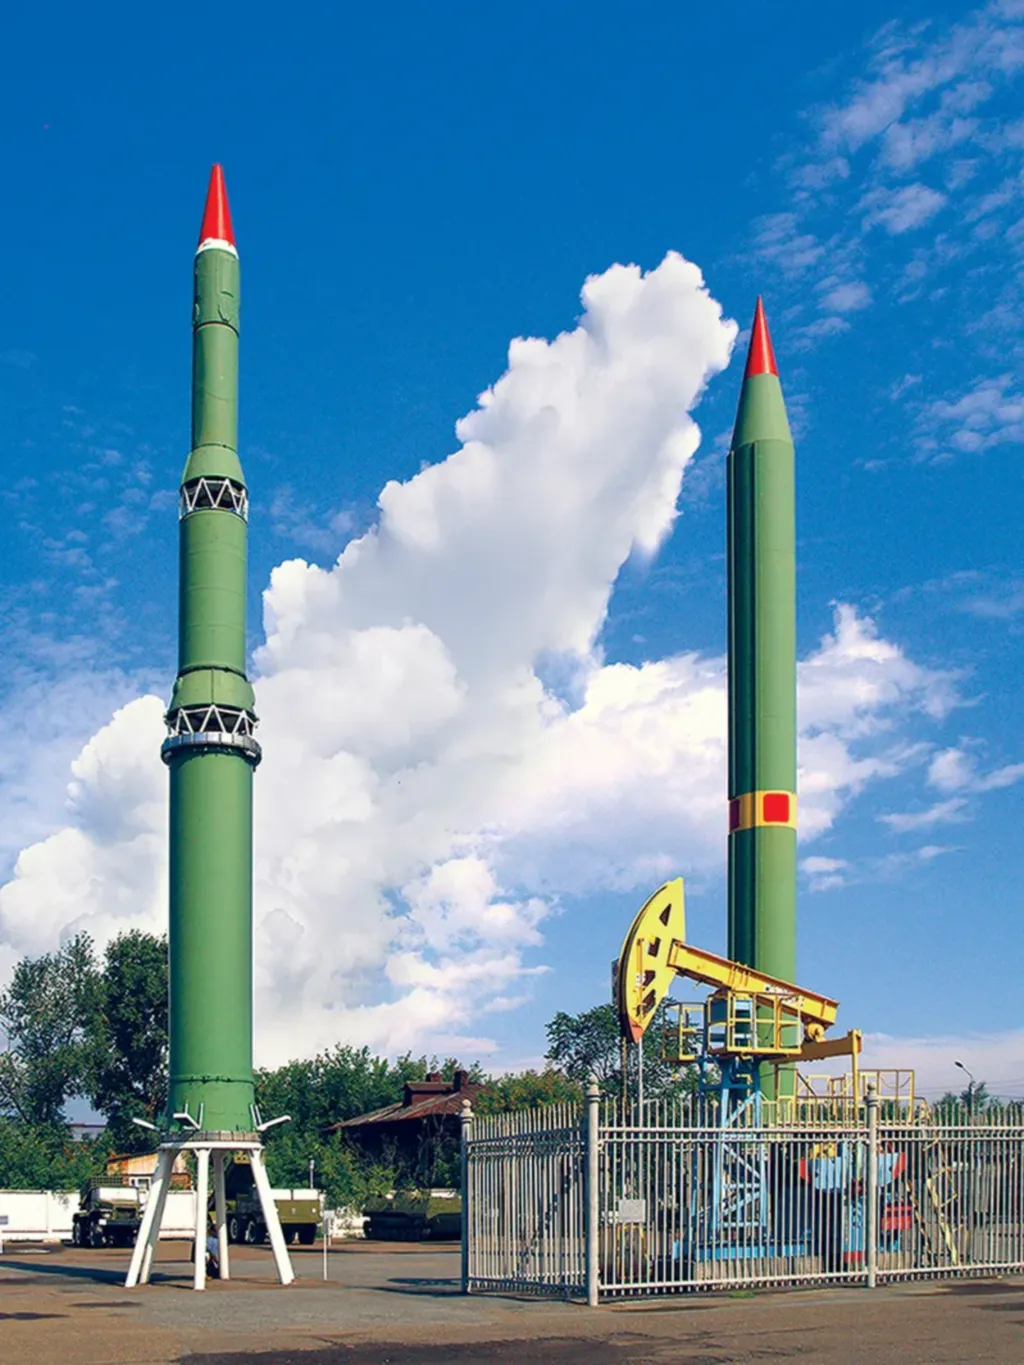 Пусковая установка для запуска ракет «Алан» (1999) / The Launcher for the Start of the Rockets "Alan" (1999)